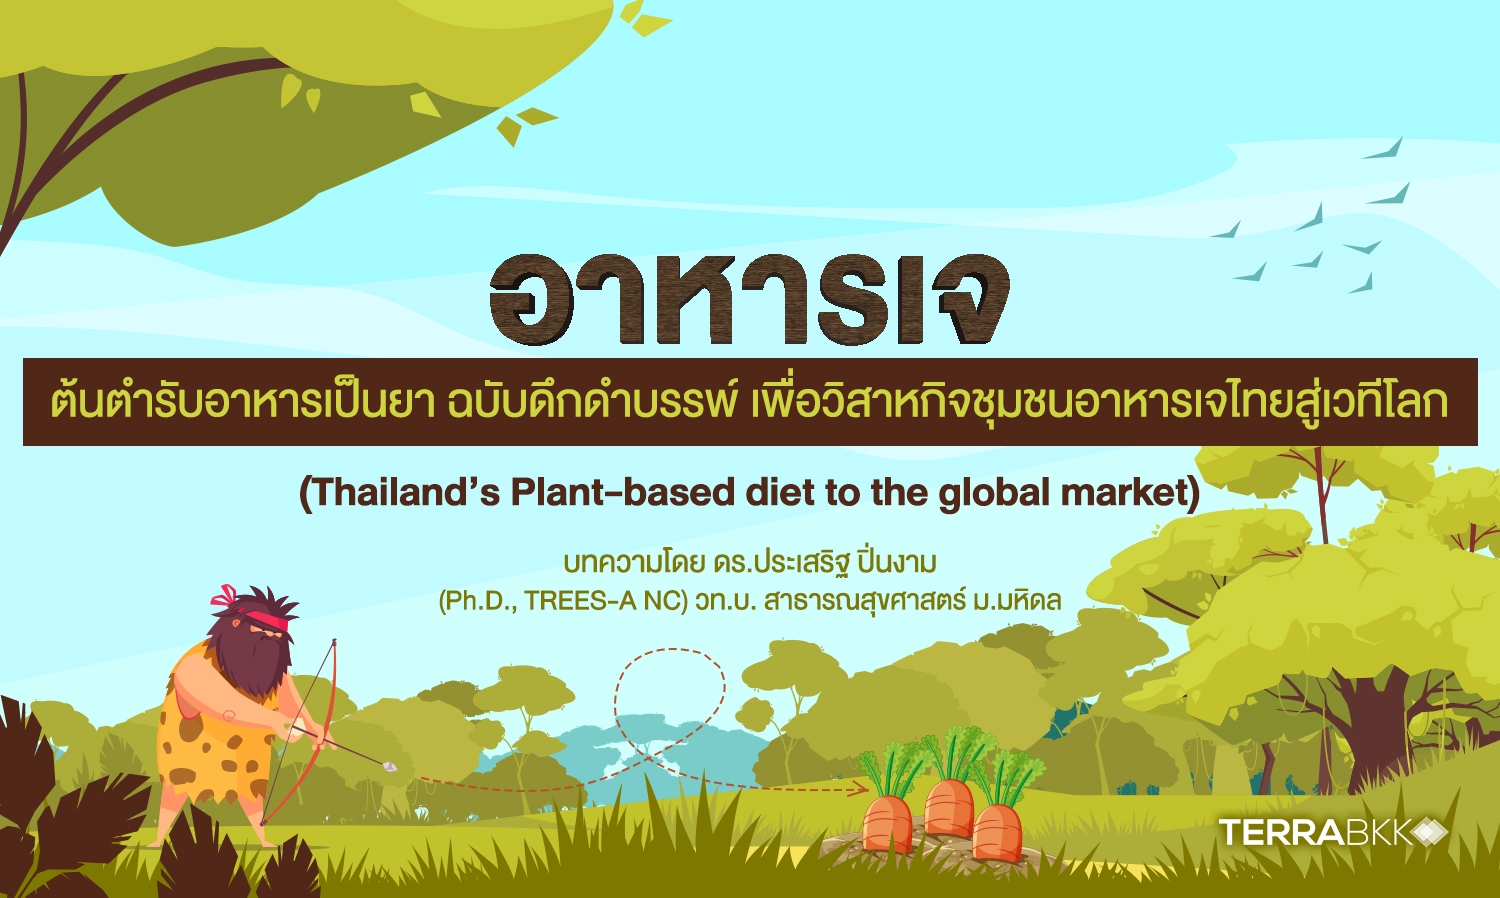 อาหารเจคือต้นตำรับอาหารเป็นยาฉบับดึกดำบรรพ์ เพื่อวิสาหกิจชุมชนอาหารเจไทยสู่เวทีโลก (Thailand’s Plant-based diet to the global market)